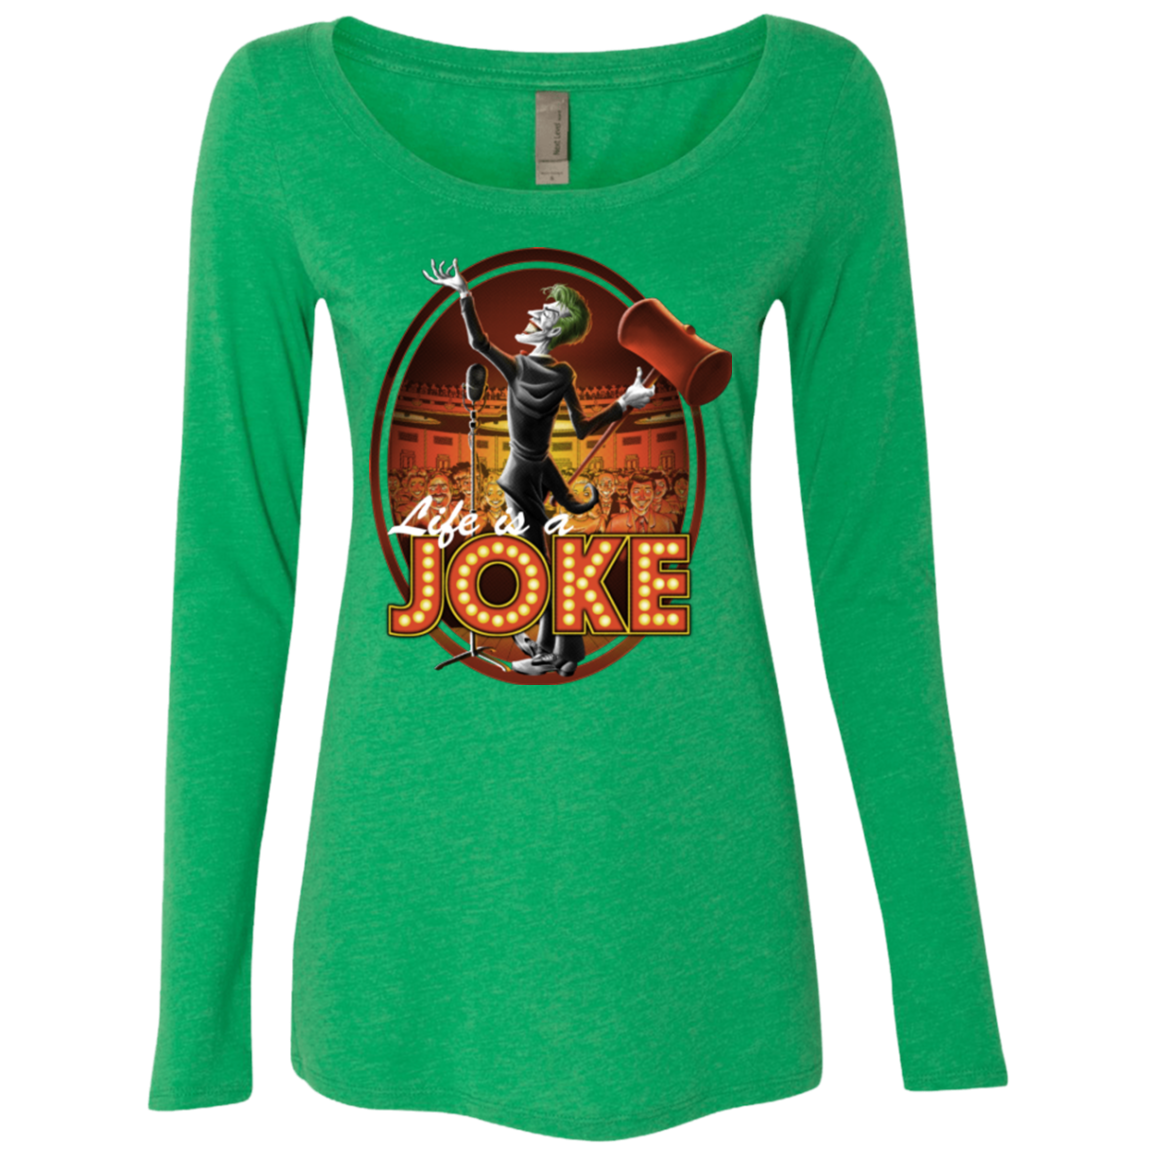 Life Is A Joke Women's Triblend Long Sleeve Shirt